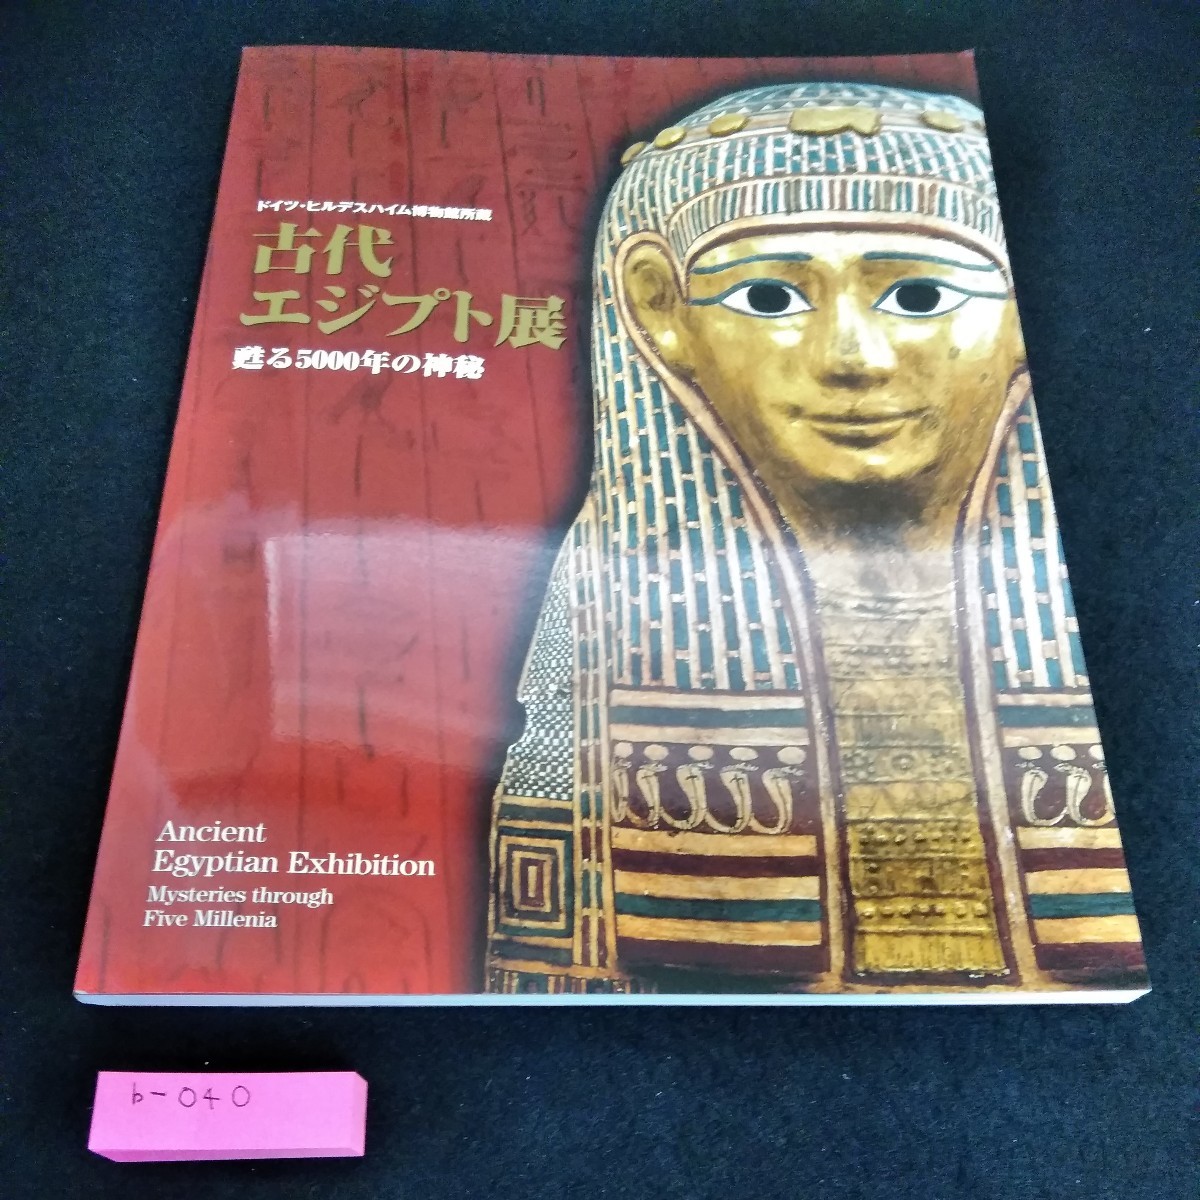 b-040 Выставка Древнего Египта из музея Хильдесхайма в Германии: Возрождение 5, 000 лет тайны*6, Рисование, Книга по искусству, Коллекция, Каталог